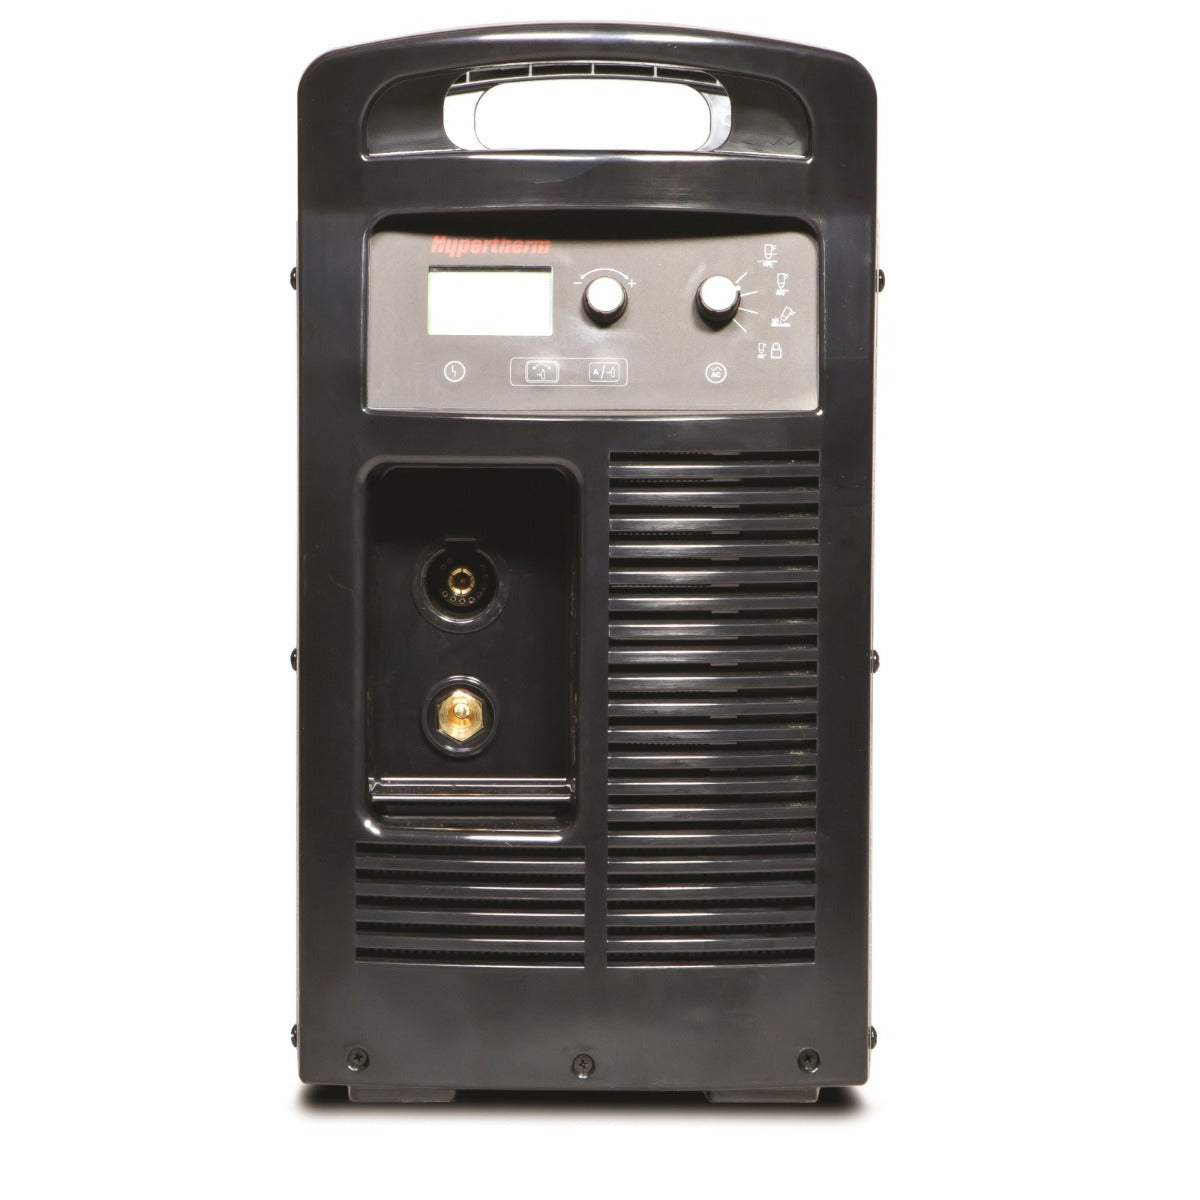 Hypertherm Powermax 105 w/CPC 25ft Mechanized Torch Pkg (059378)